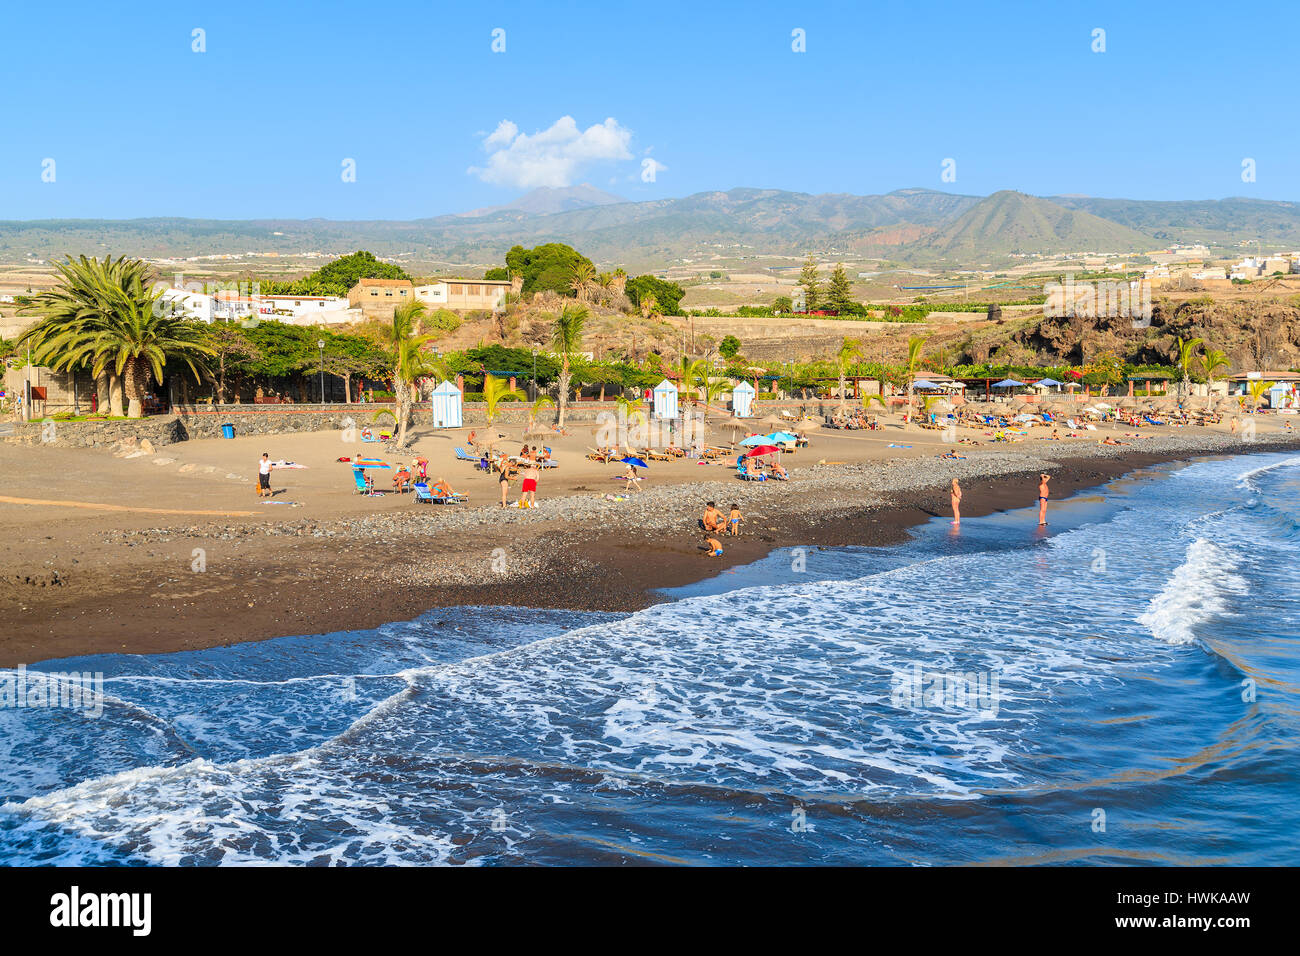 Strand von SAN JUAN, Teneriffa - 15. November 2015: Ozeanwelle und schönen Strand in San Juan Küstenstadt, Teneriffa, Spanien. Stockfoto